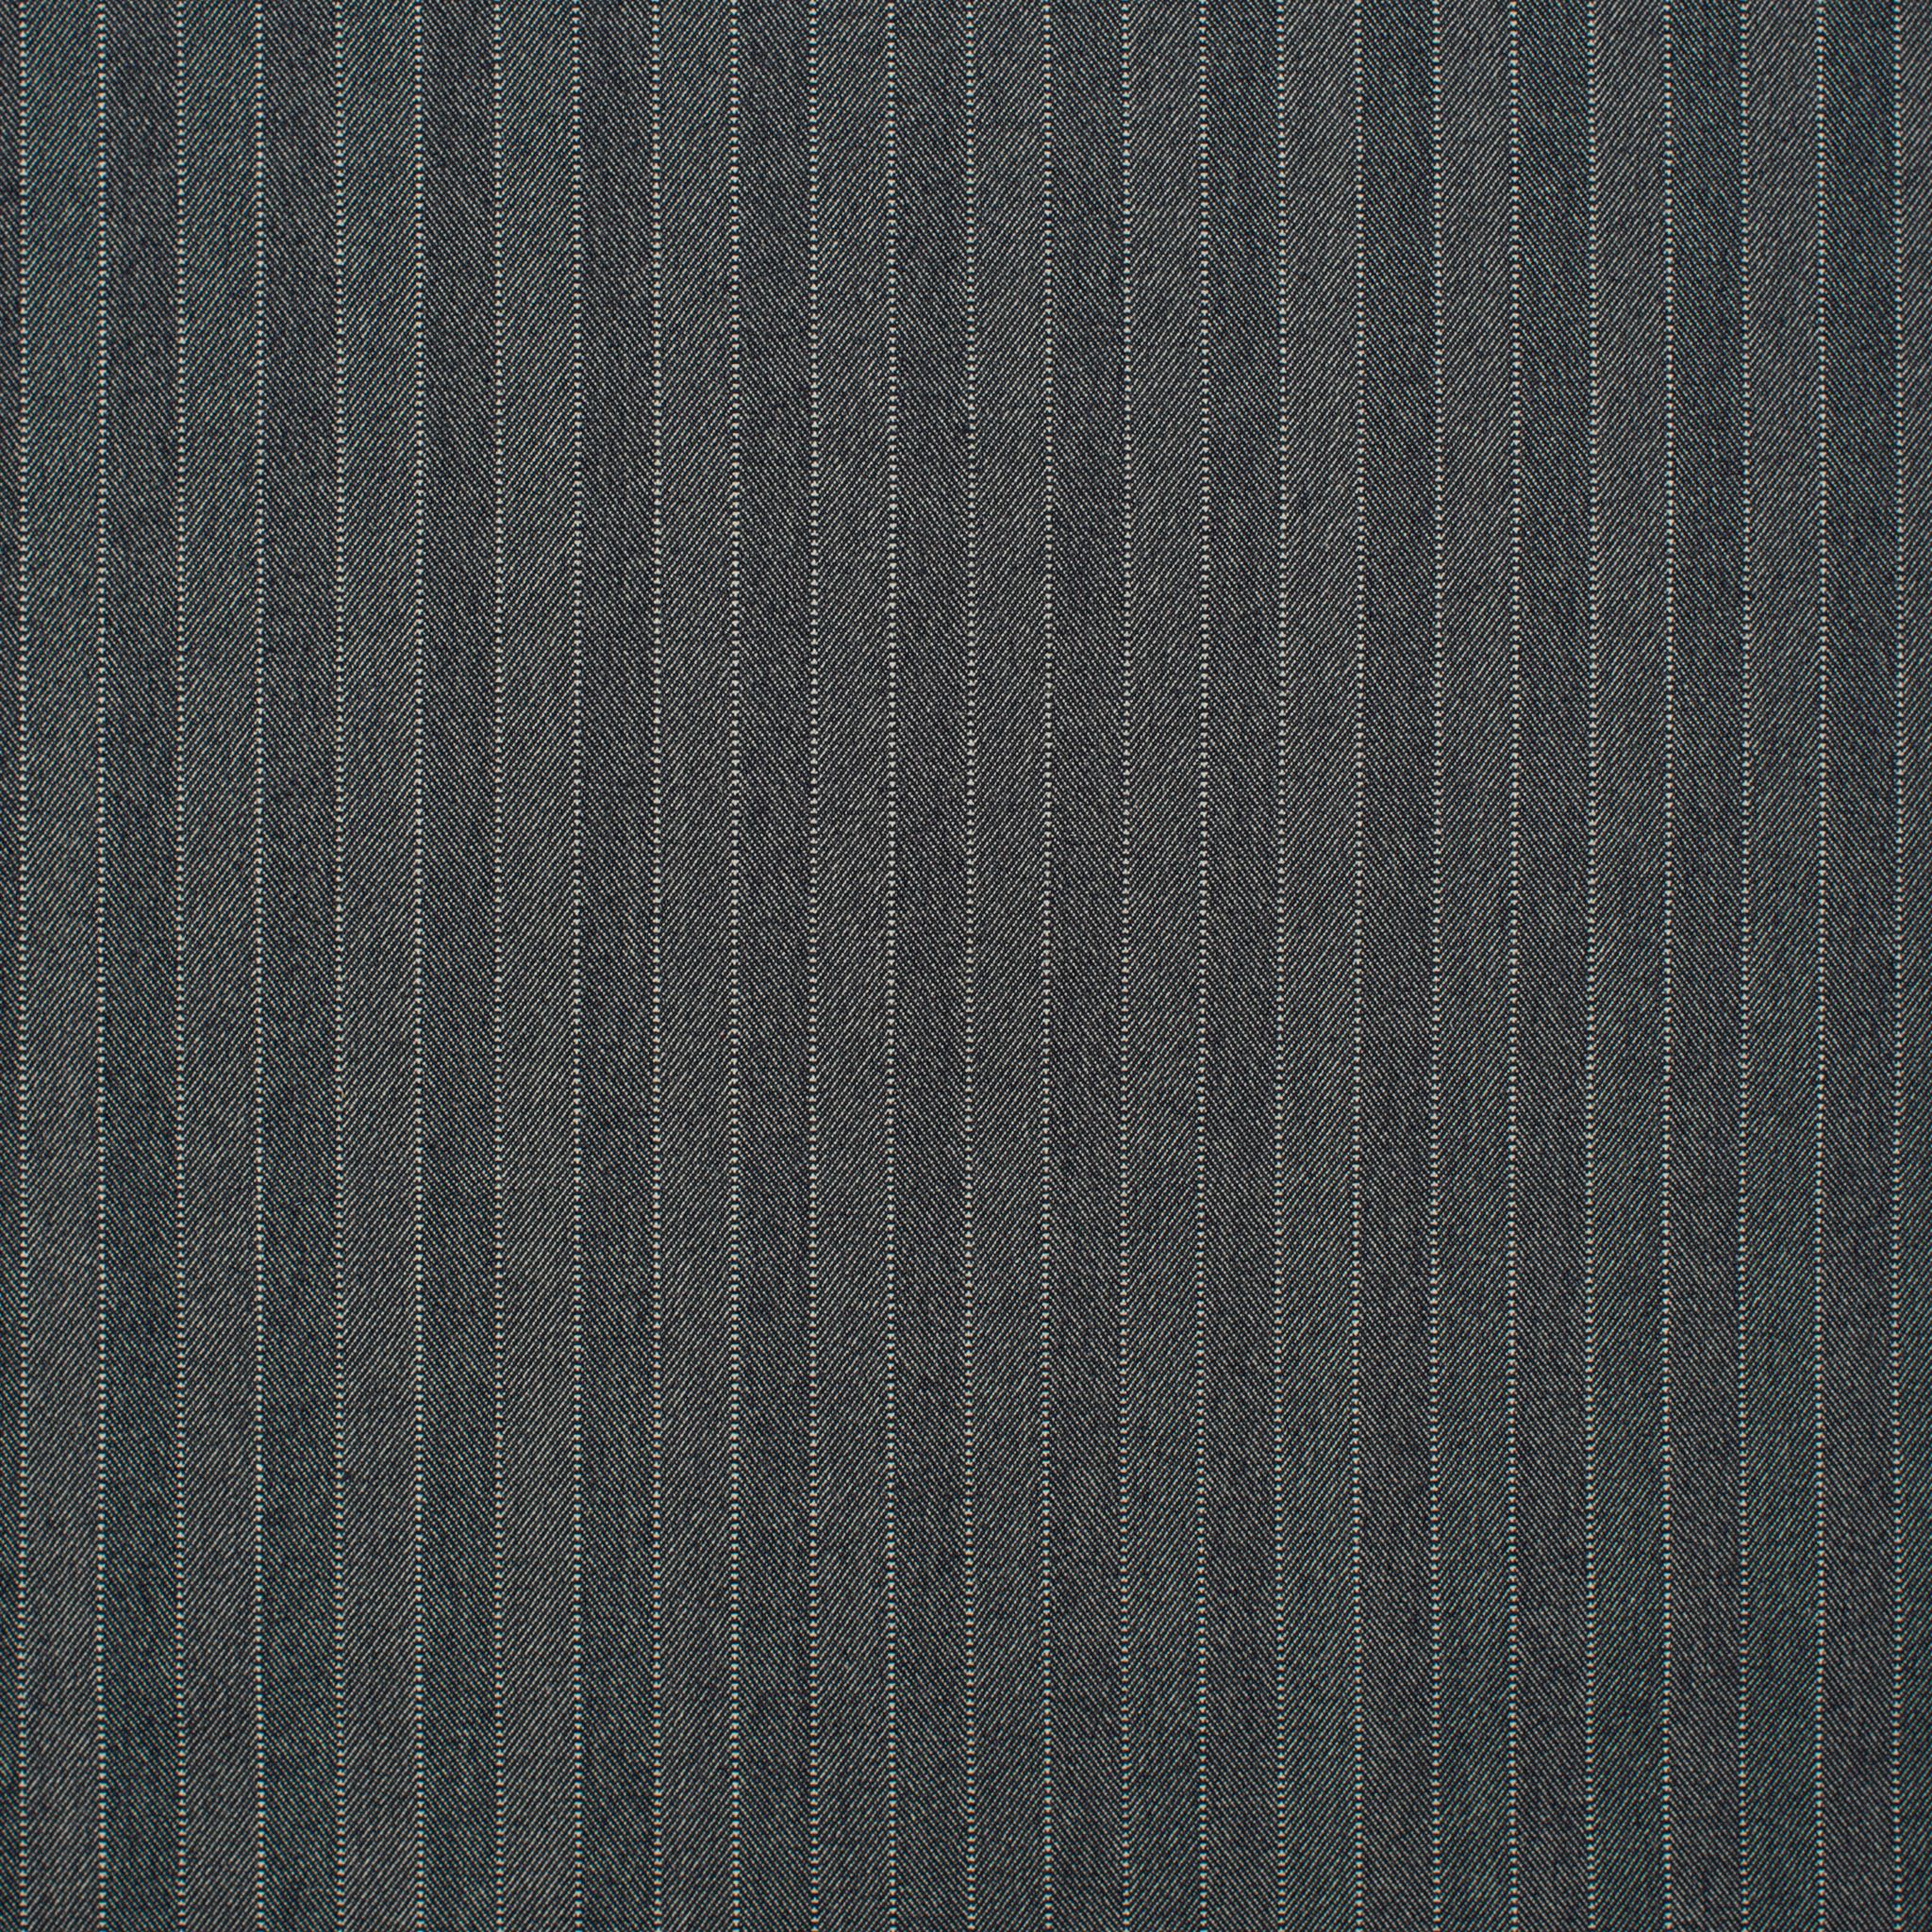 Treemont Wilton Carpet, Charcoal Default Title